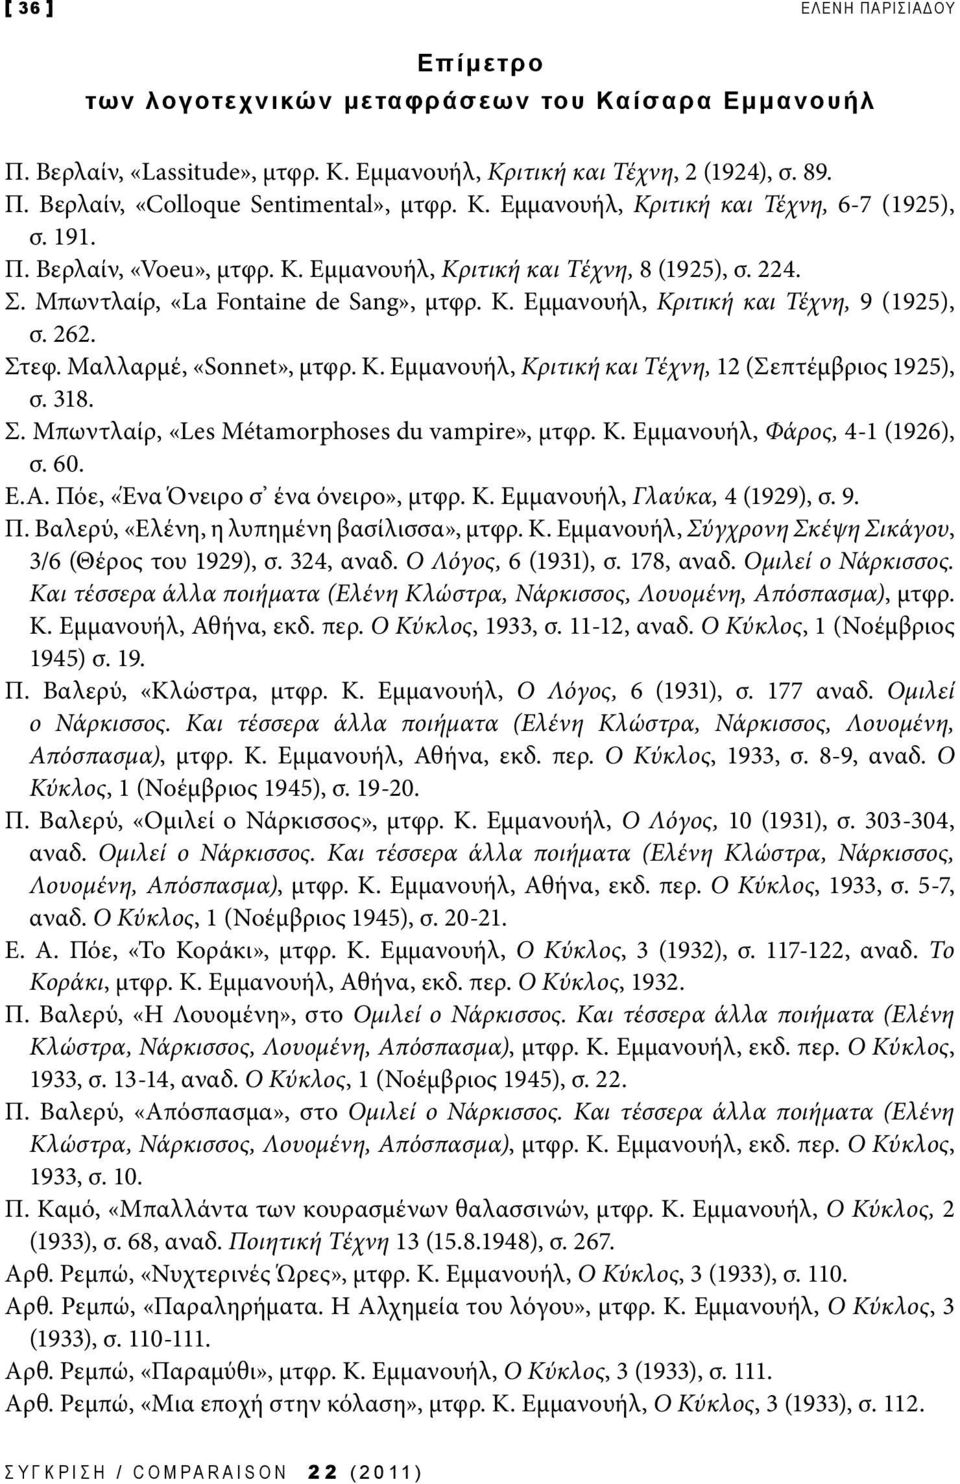 262. Στεφ. Μαλλαρμέ, «Sonnet», μτφρ. Κ. Εμμανουήλ, Κριτική και Τέχνη, 12 (Σεπτέμβριος 1925), σ. 318. Σ. Μπωντλαίρ, «Les Métamorphoses du vampire», μτφρ. Κ. Εμμανουήλ, Φάρος, 4-1 (1926), σ. 60. Ε.Α.